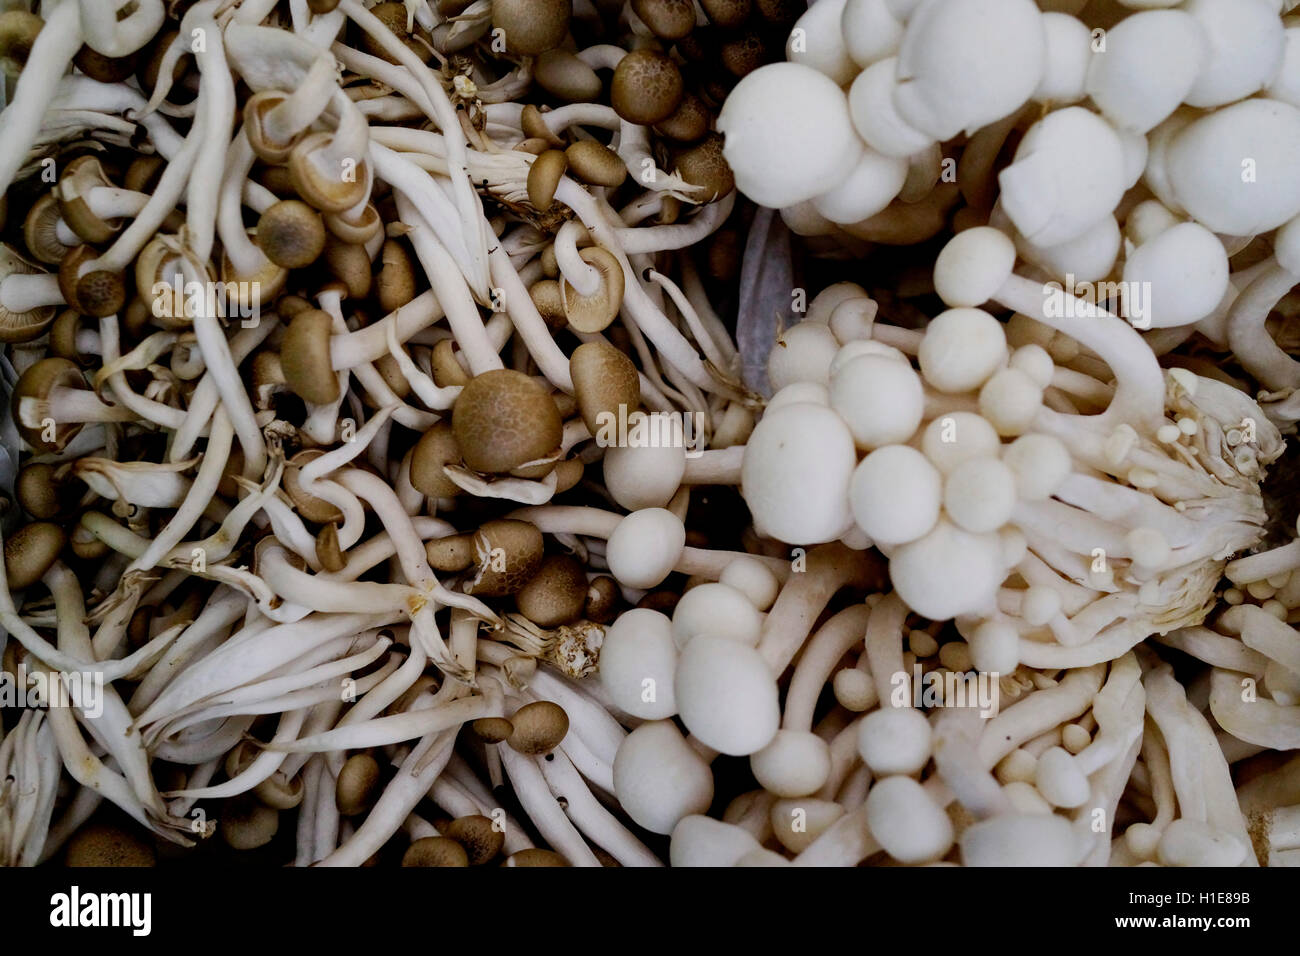 Concha blanca de Alba o hon-shimeji o haya de hongos, en el mercado de los granjeros. Grupo de hongos Foto de stock